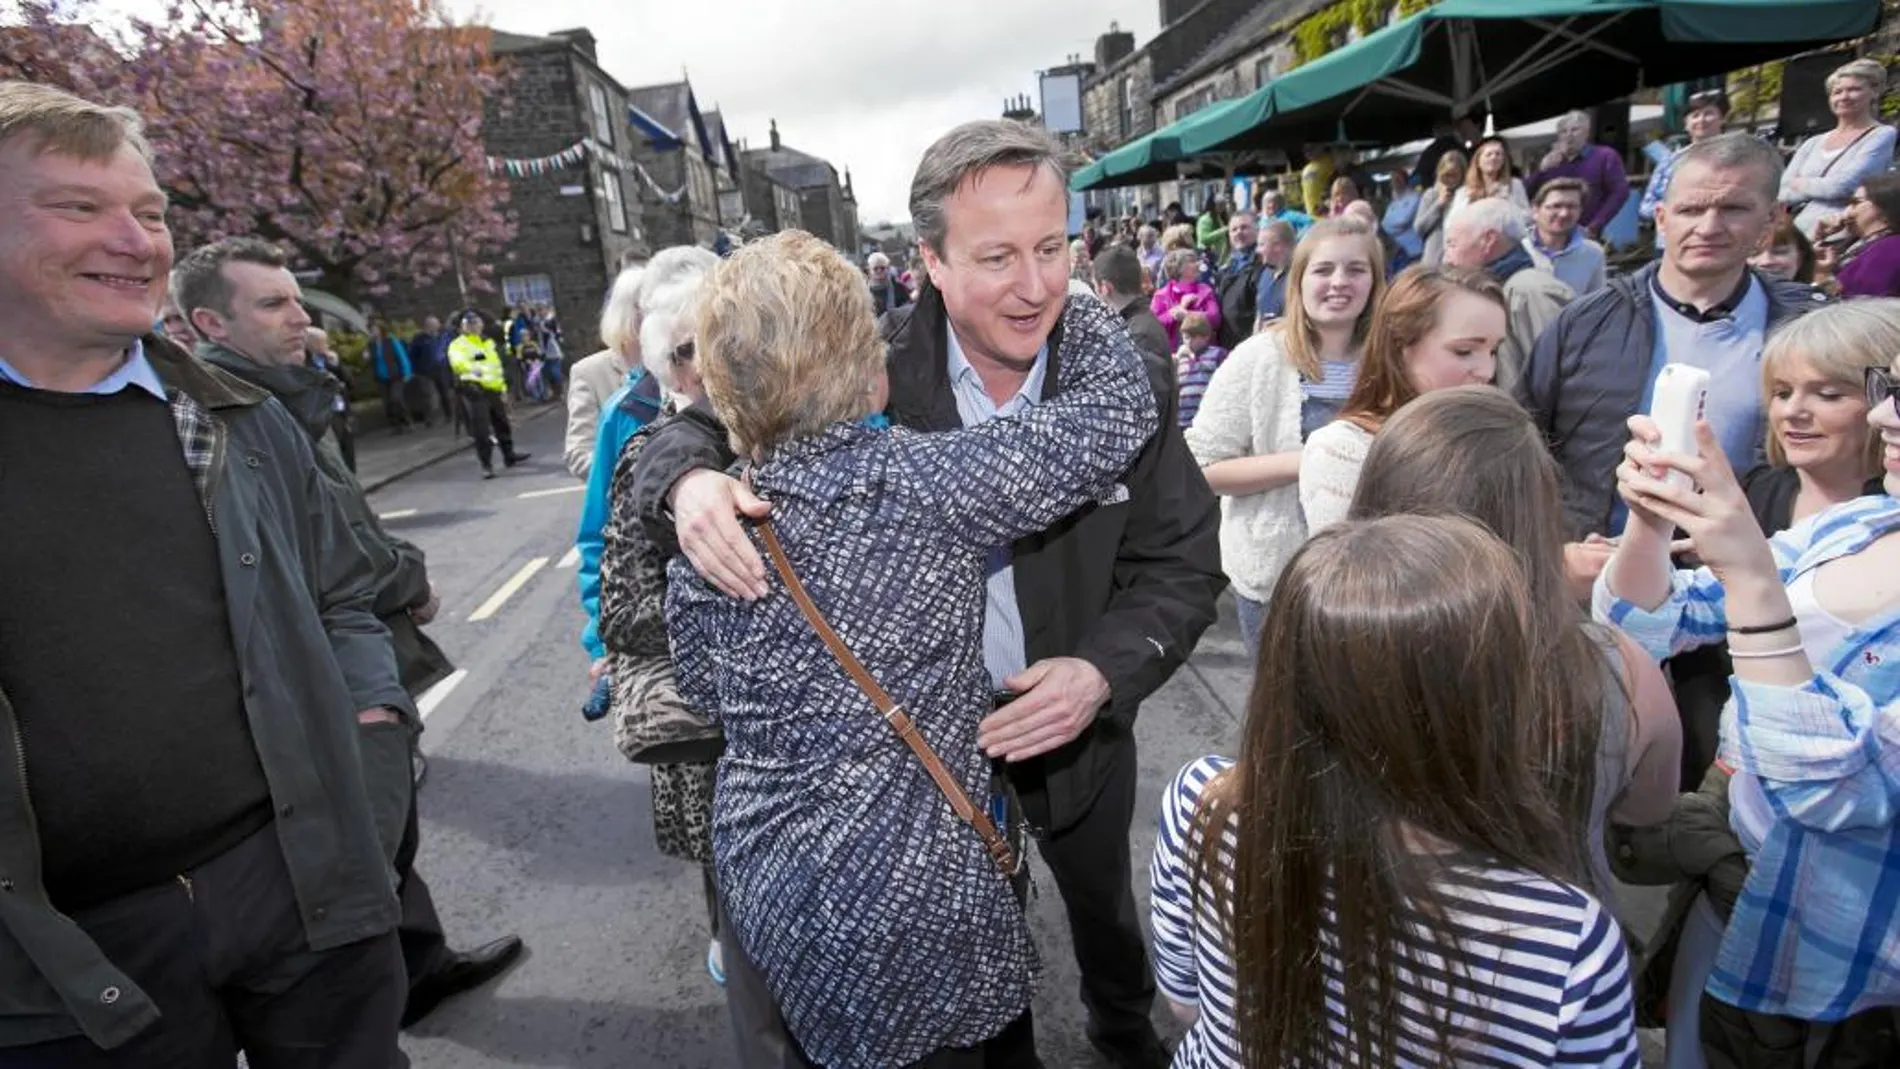 Una simpatizante abraza a David Cameron durante su visita a Addingham, donde se celebraba la vuelta ciclista de Yorkshire